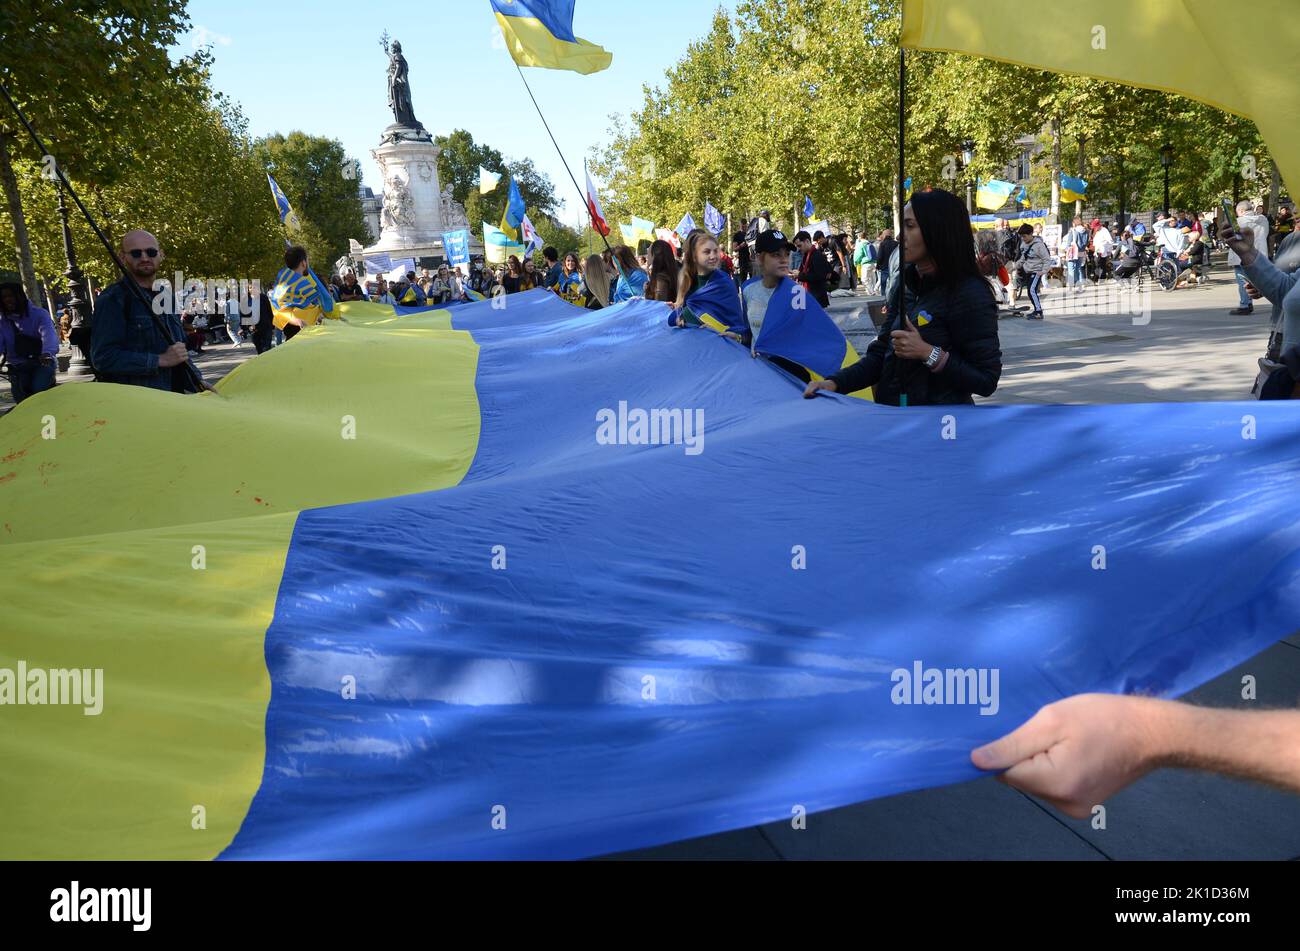 nouveau samedi de soutien à l'Ukraine Stockfoto